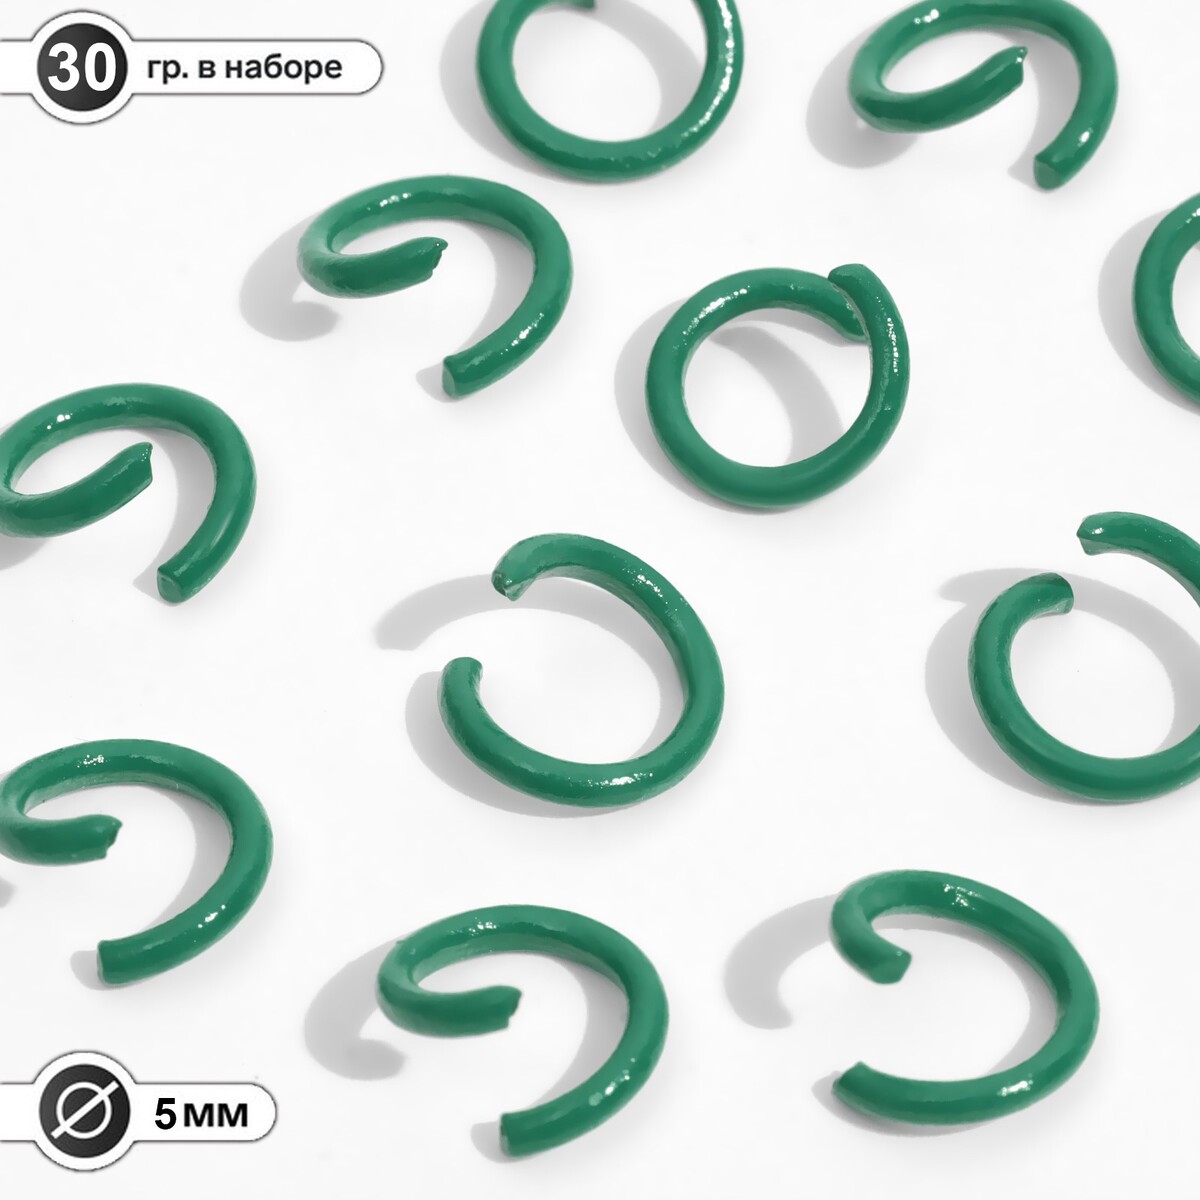 Кольцо соединительное, разъемное d=5 мм, (набор 30 г), цвет зеленый эспандер кольцо 20 кг h180701 20mg зеленый